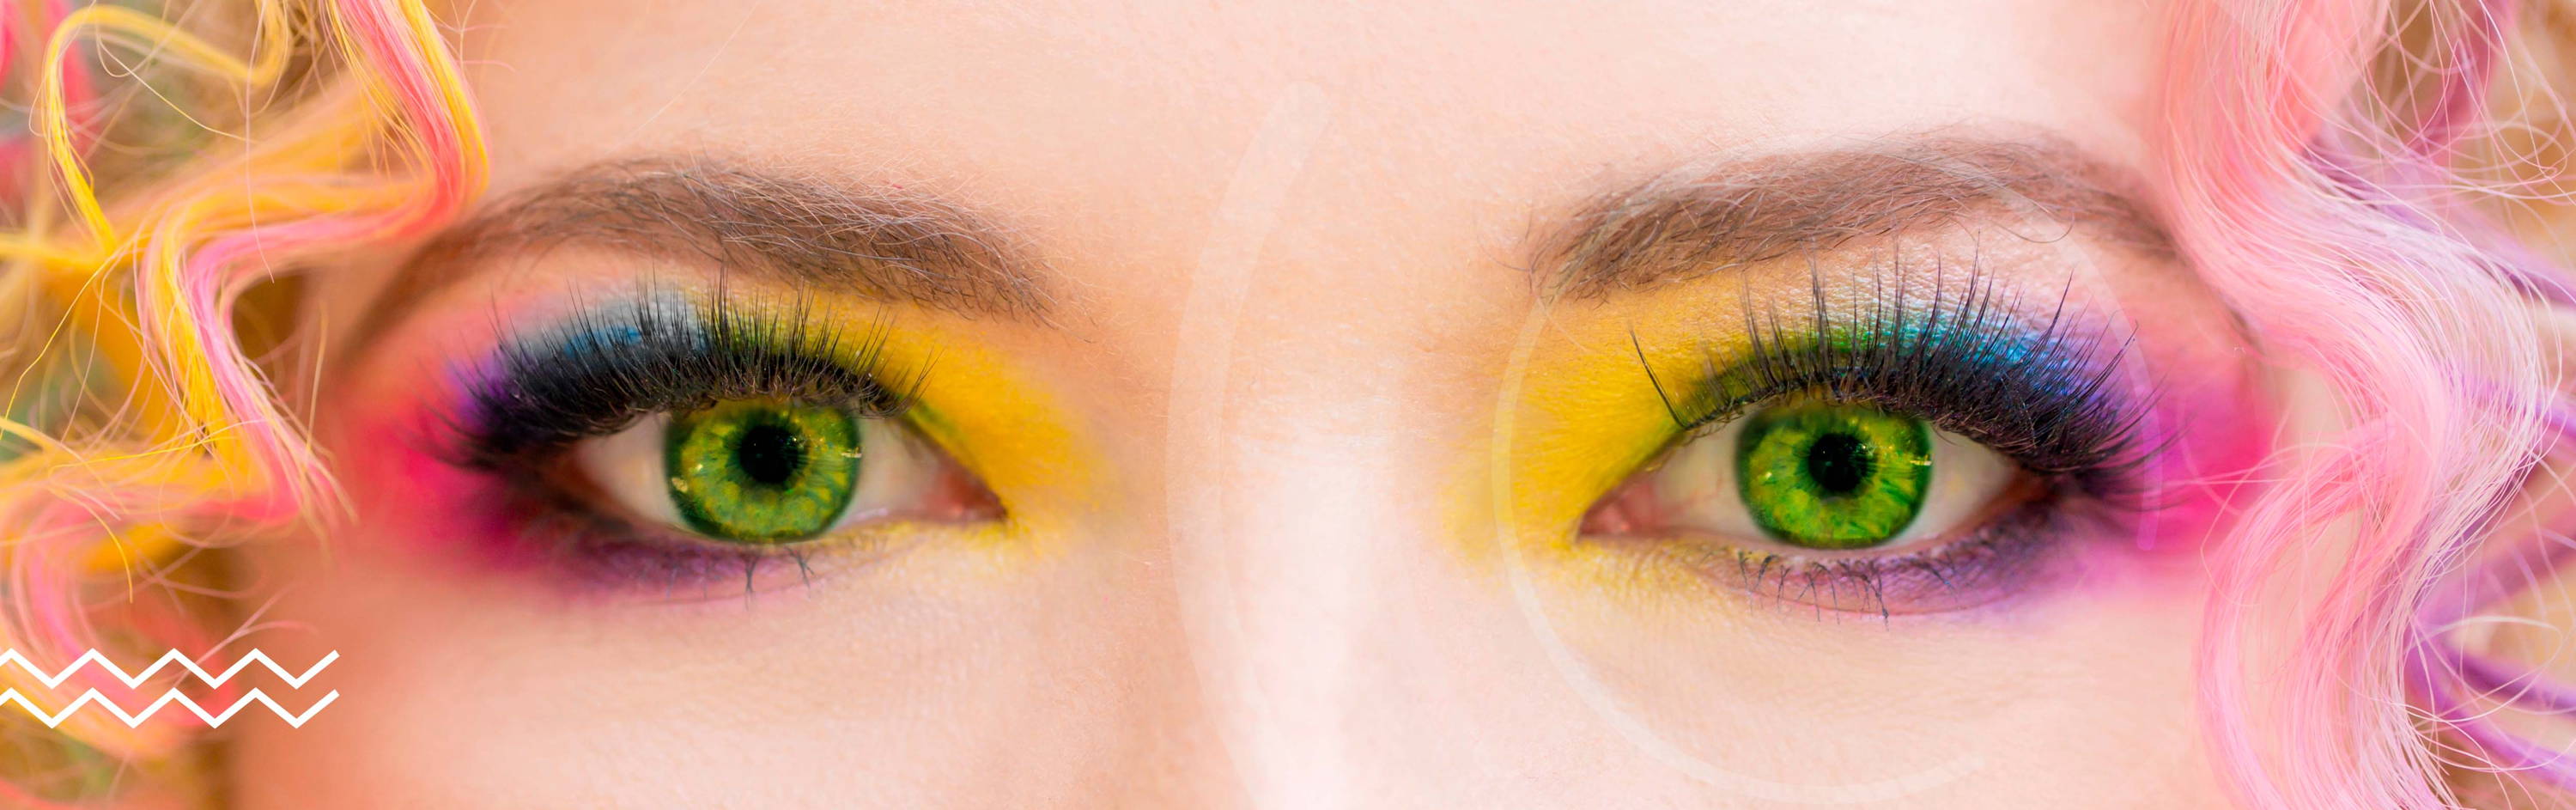 Imagen de los ojos de una mujer que lleva puesto unos lentes de contacto de color en tono verde. Aunque la imagen principal son los ojos de la modelo, podemos apreciar que trae una peluca y maquillaje con los colores del arcoiris.